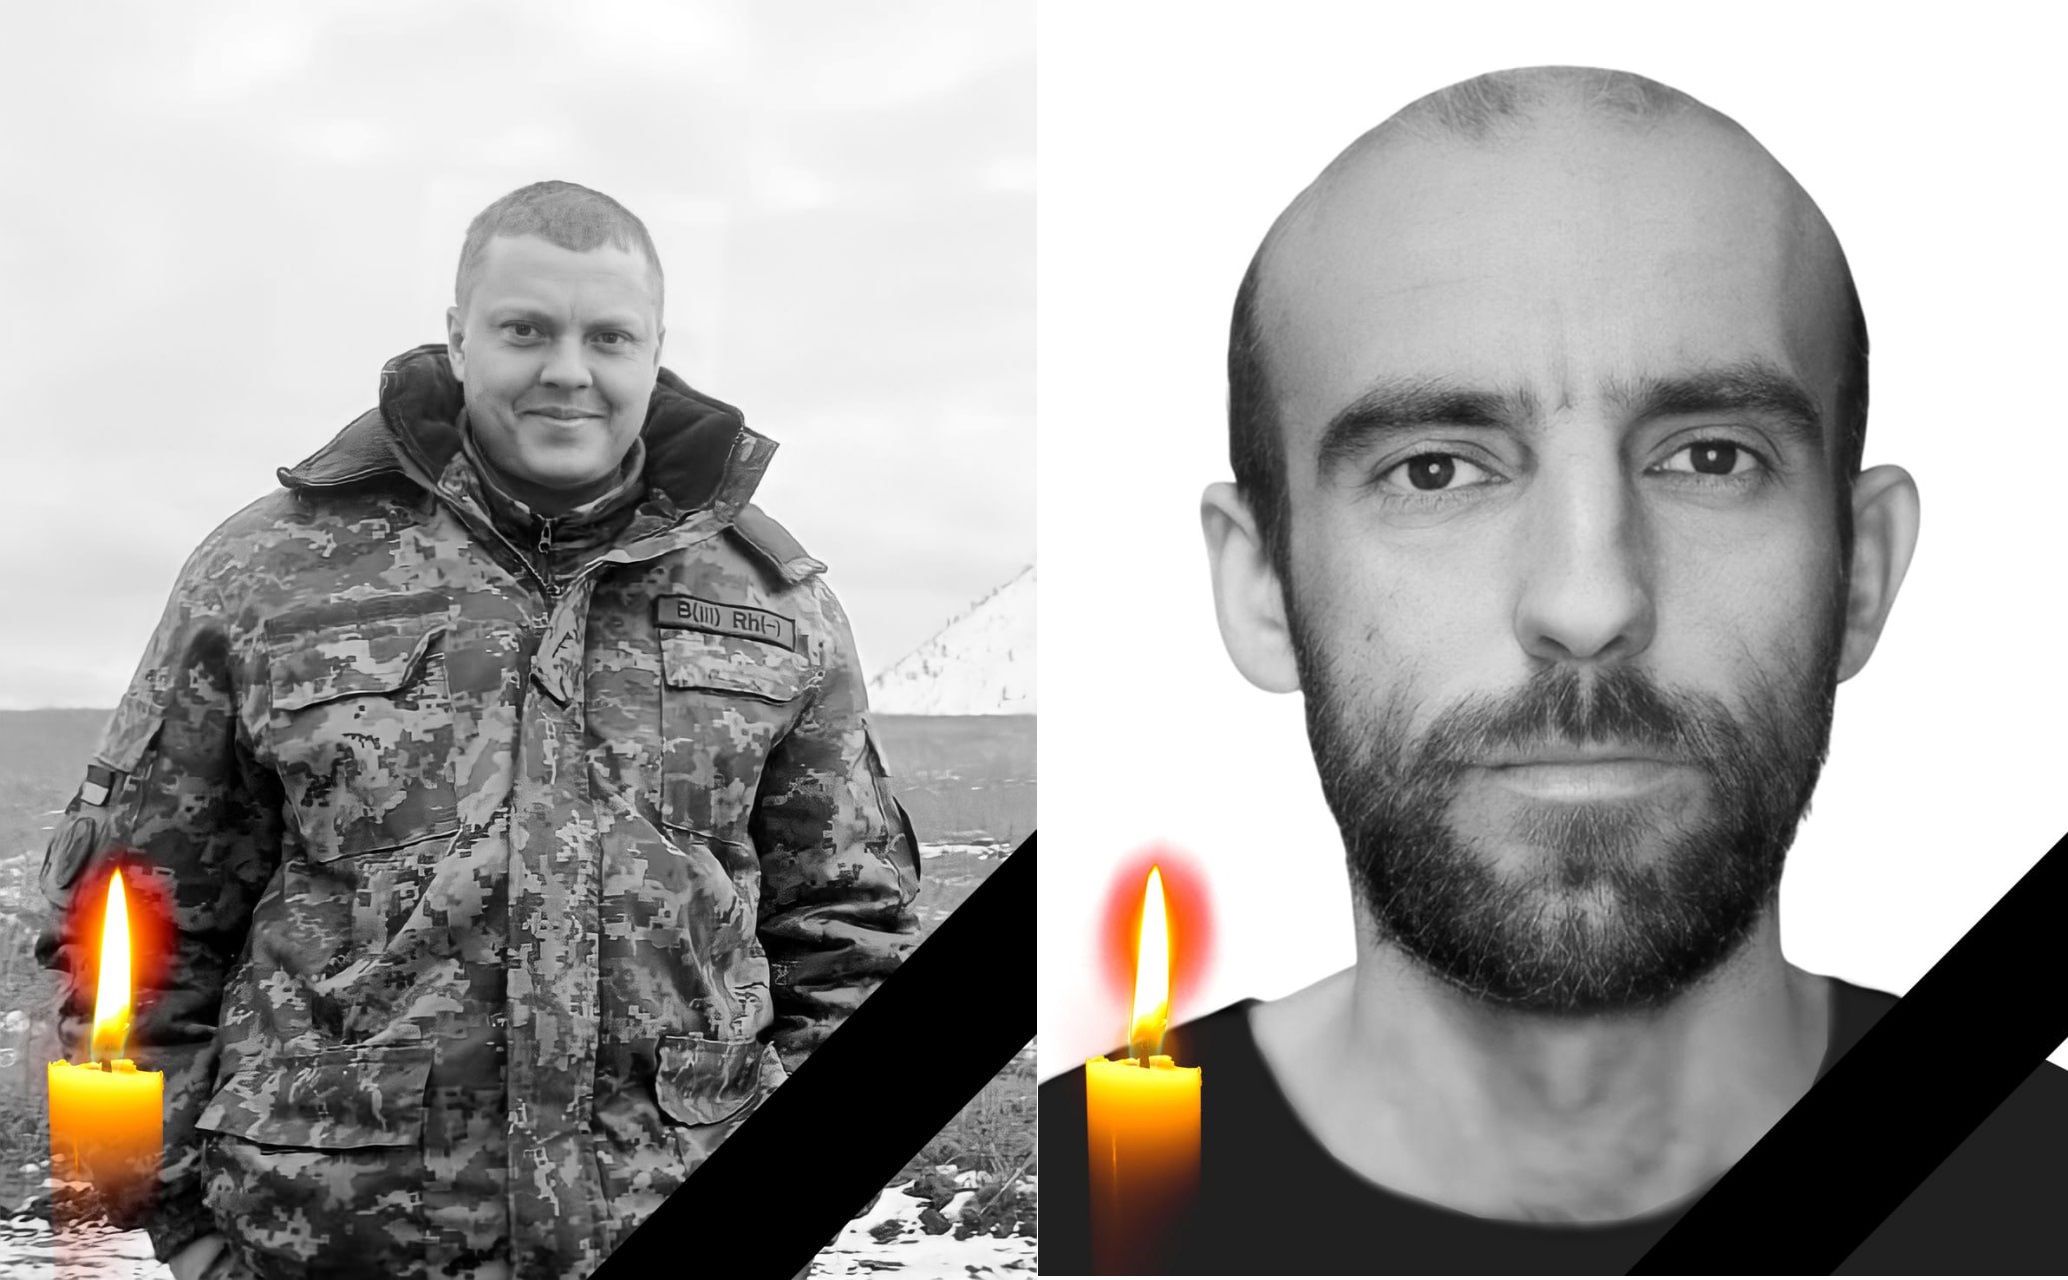 На Харьковщине простились с двумя защитниками, погибшими на Донбассе